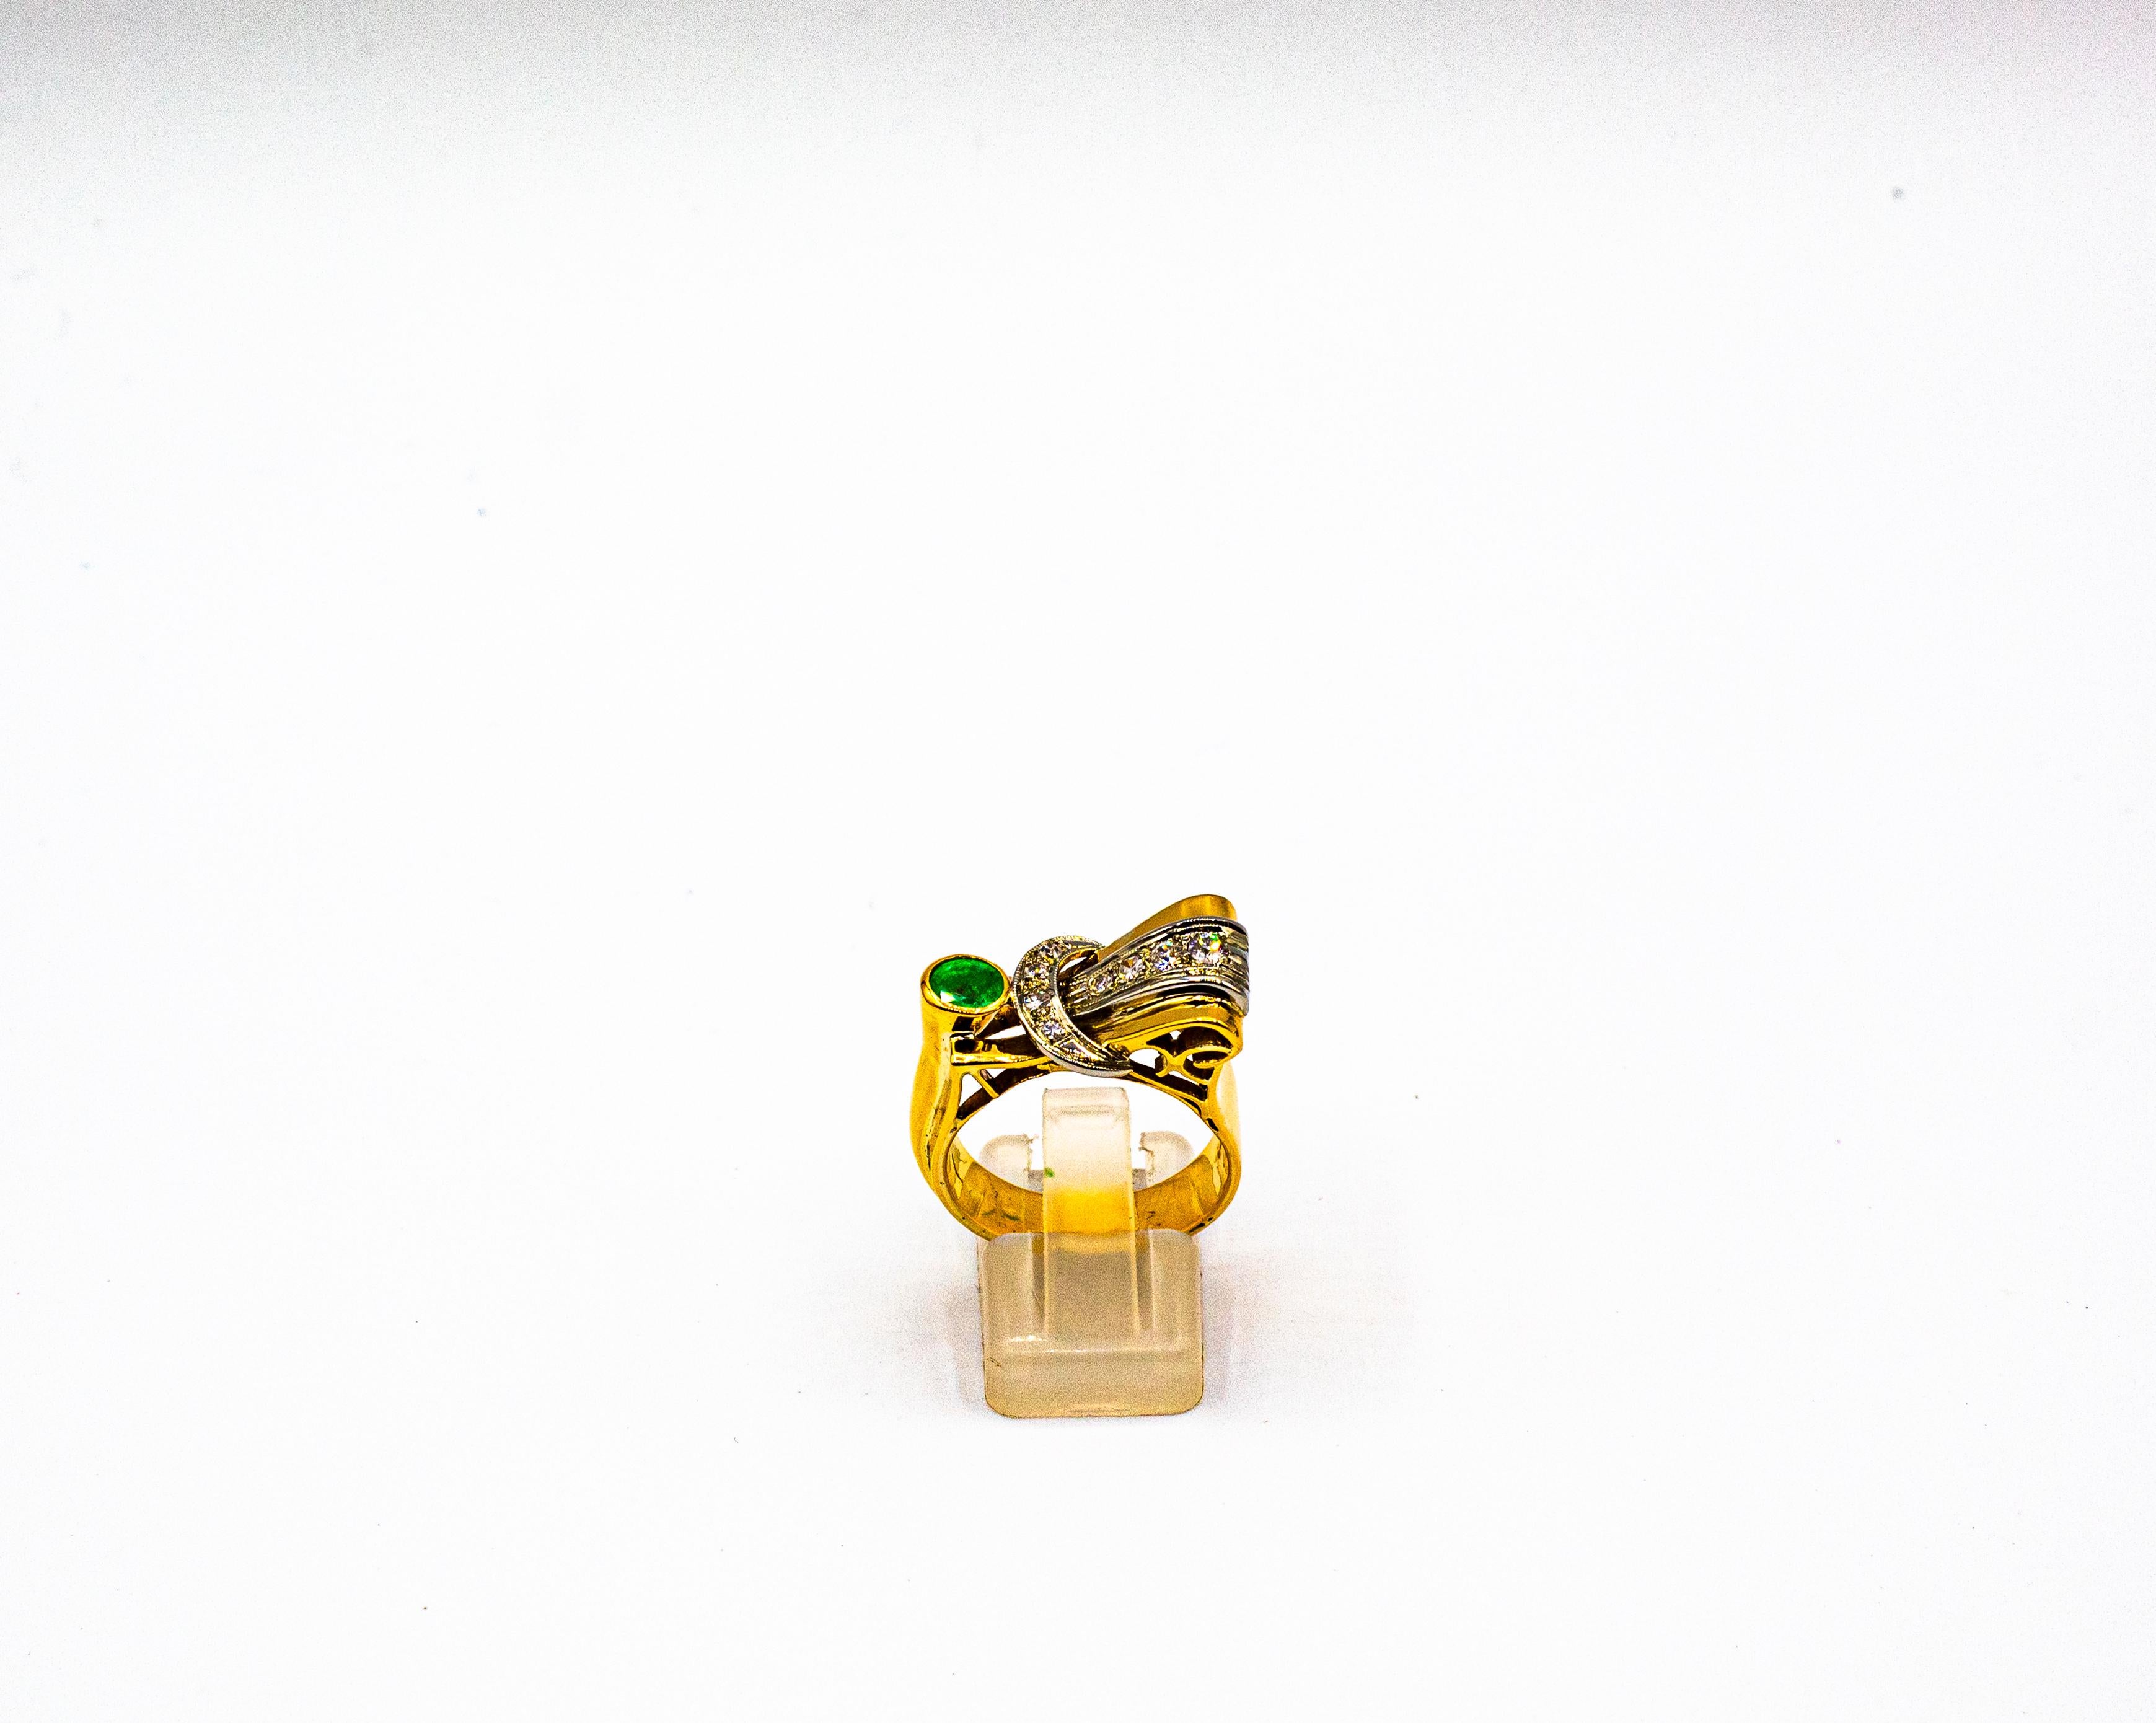 Dieser Ring ist aus 18K Weiß- und Gelbgold gefertigt.
Dieser Ring hat 0,25 Karat Diamanten im weißen Brillantschliff.
Dieser Ring hat einen 0,50 Karat Smaragd.

Größe ITA: 18 USA: 8 1/4

Da wir eine Werkstatt sind, ist jedes Stück handgefertigt,